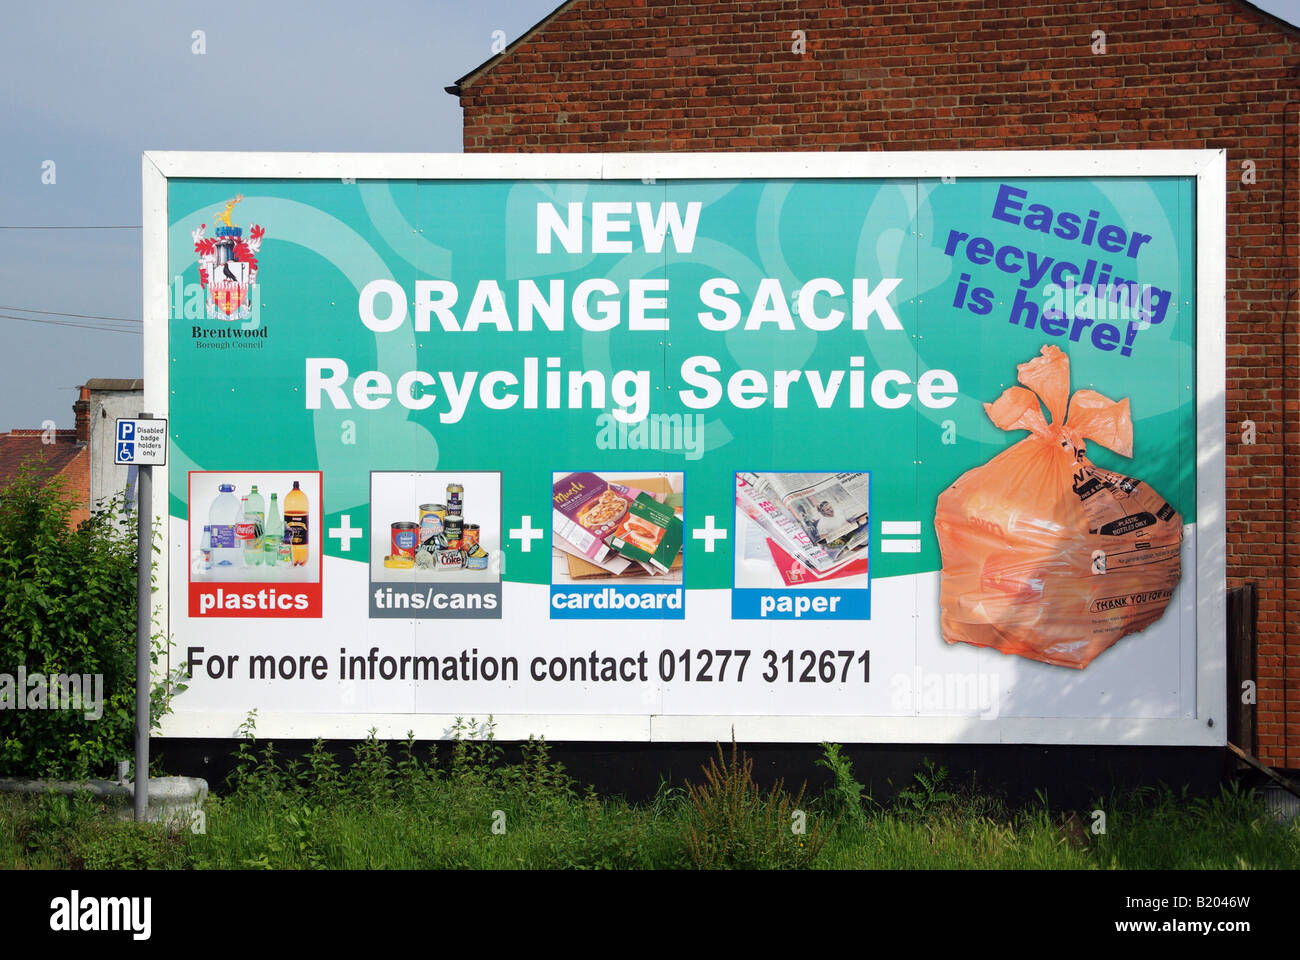 Brentwood Borough Council panneau publicitaire communautaire dans le centre-ville pour promouvoir l'information sur le recyclage des ordures ménagères dans les sacs orange Royaume-Uni Banque D'Images